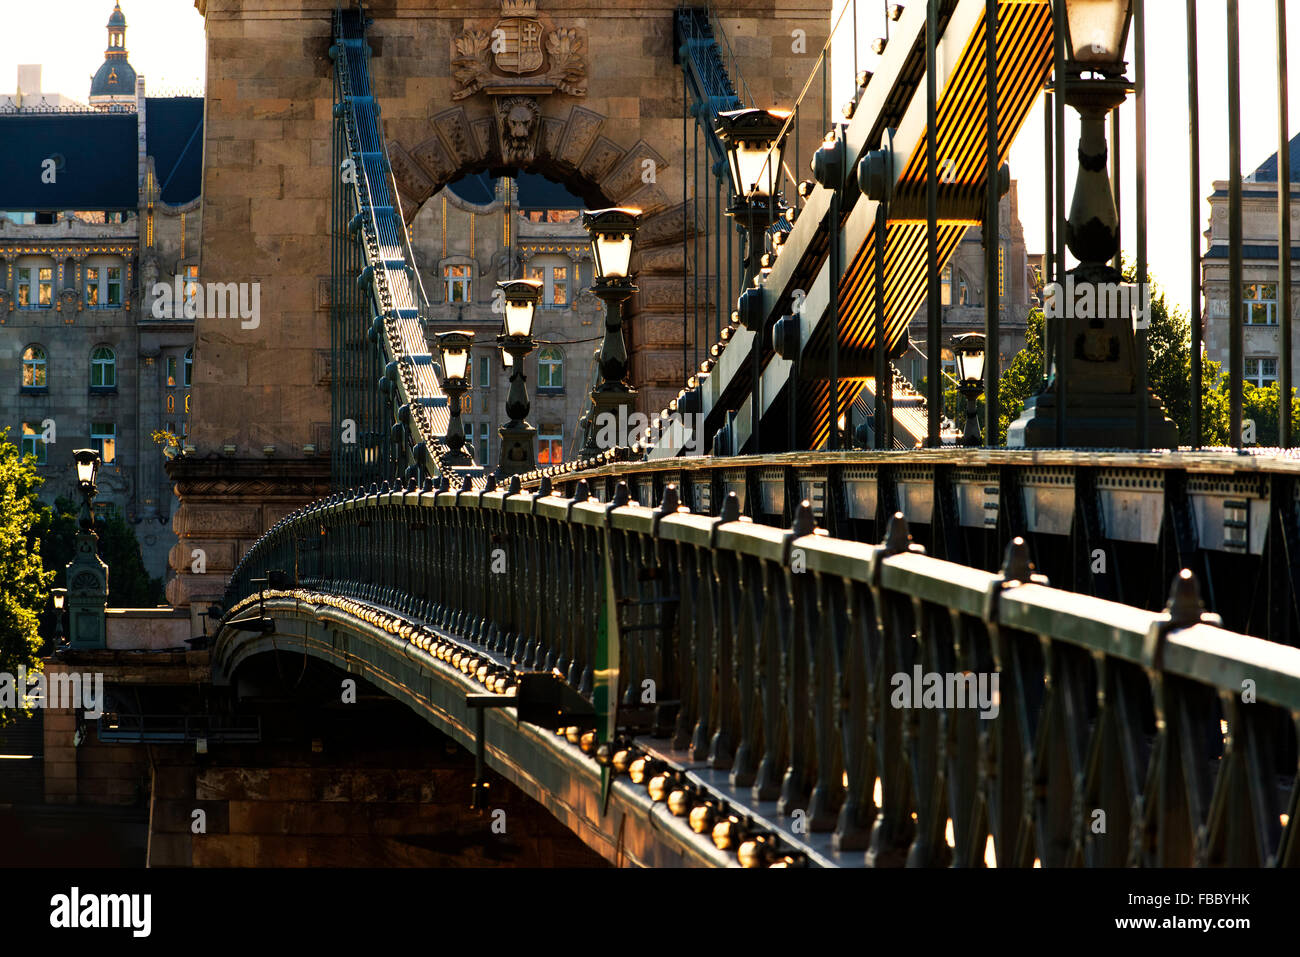 Szechenyi chain bridge, River danube, Budapest, Hungary, cycling, cyclists Stock Photo